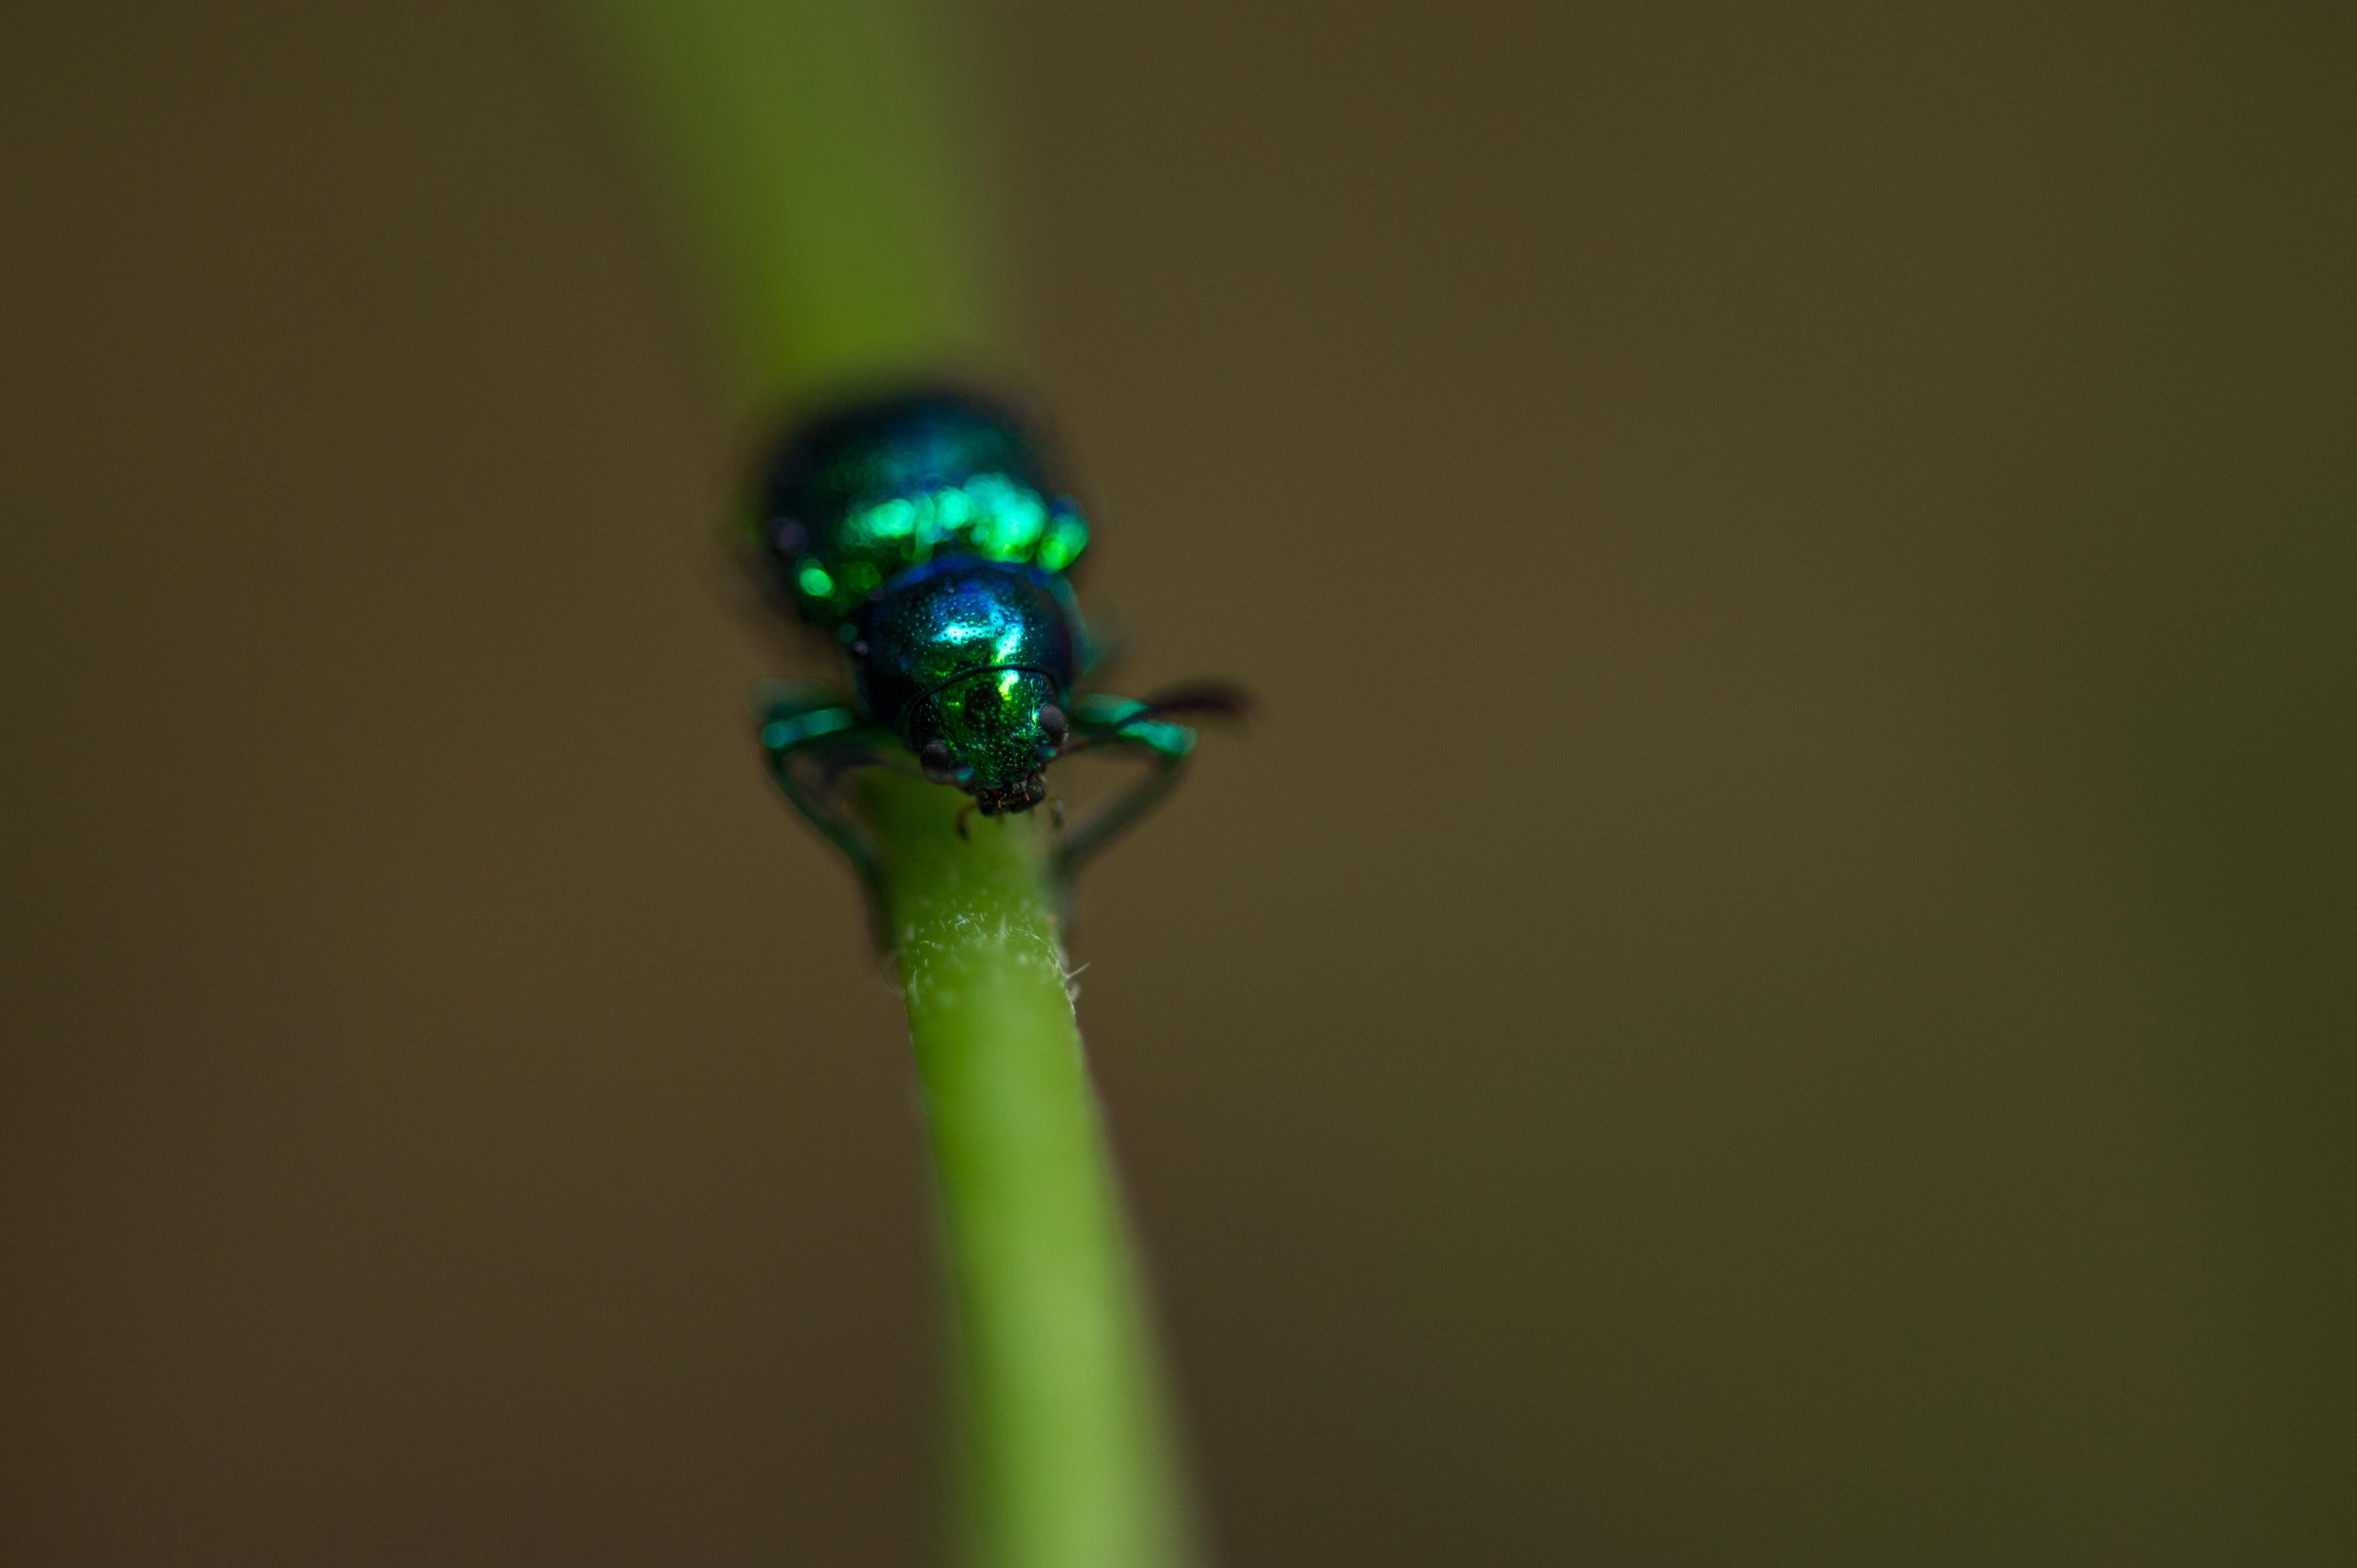 オオミドリサルハムシ 虫の写真と生態なら昆虫写真図鑑 ムシミル